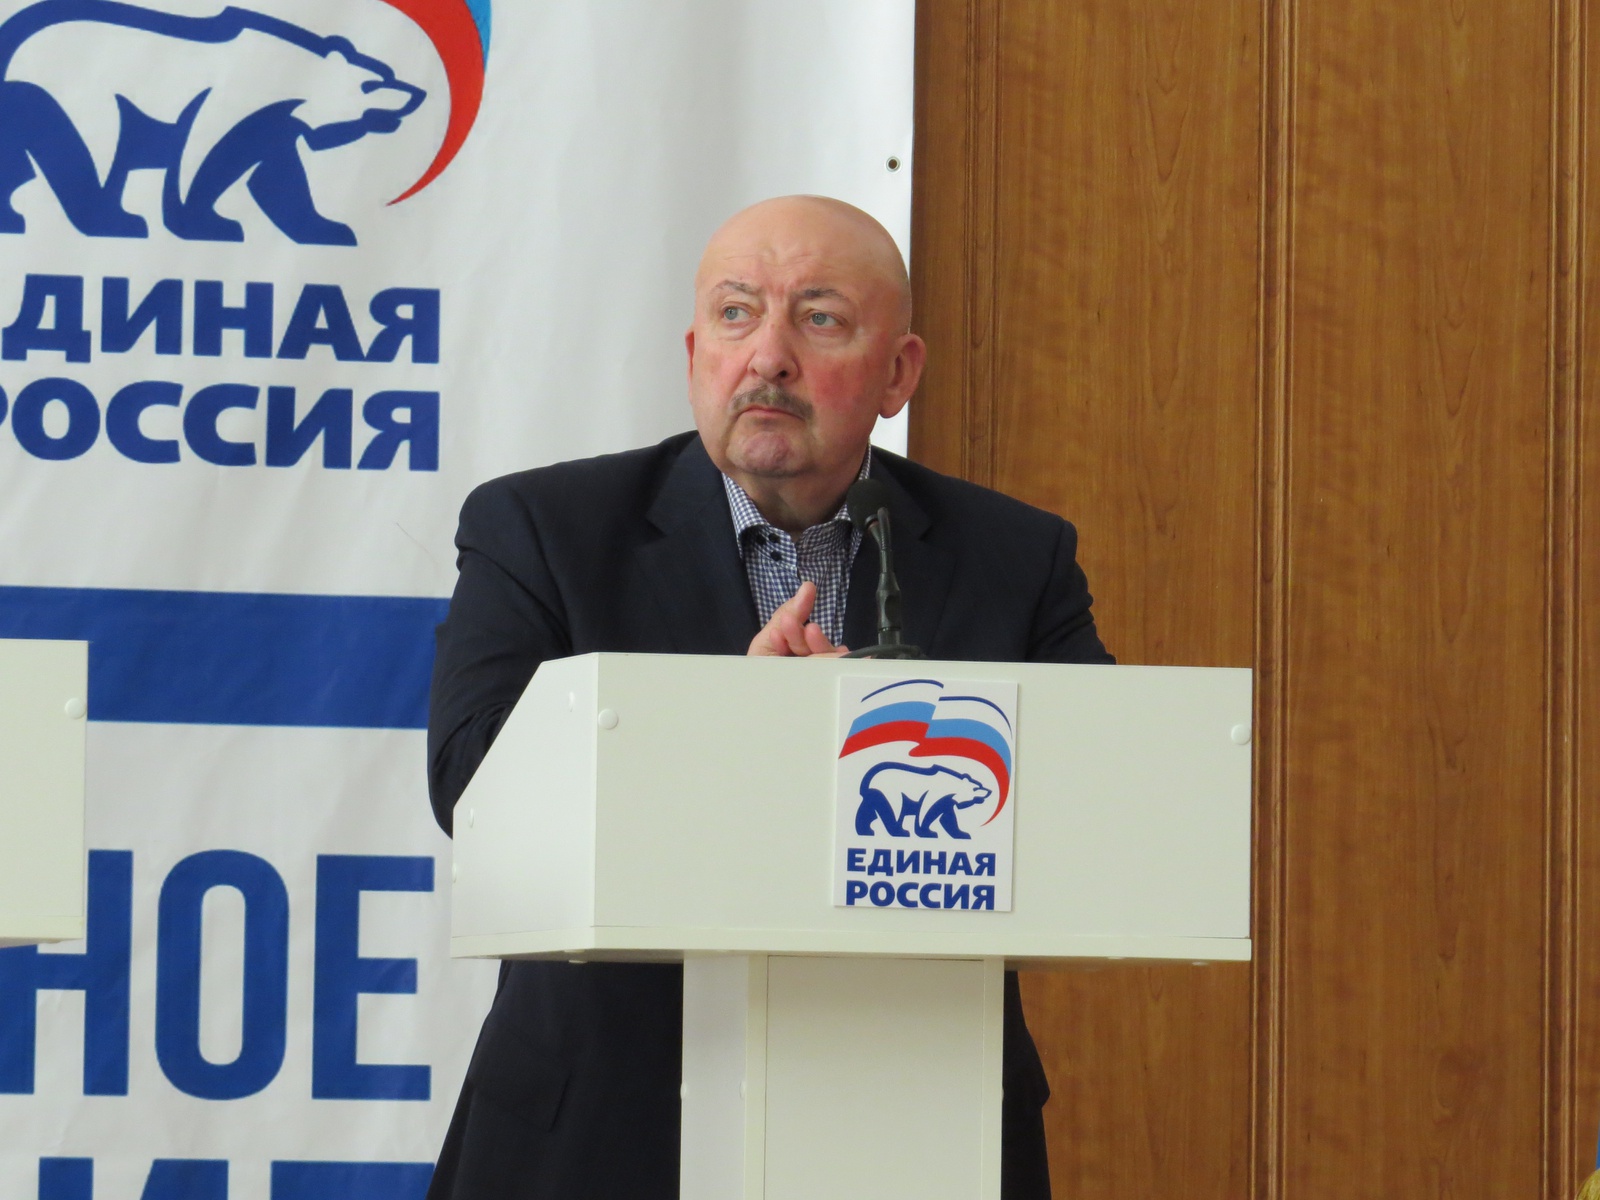   Дебаты участников предварительного голосования в регионах РФ. Дагестан